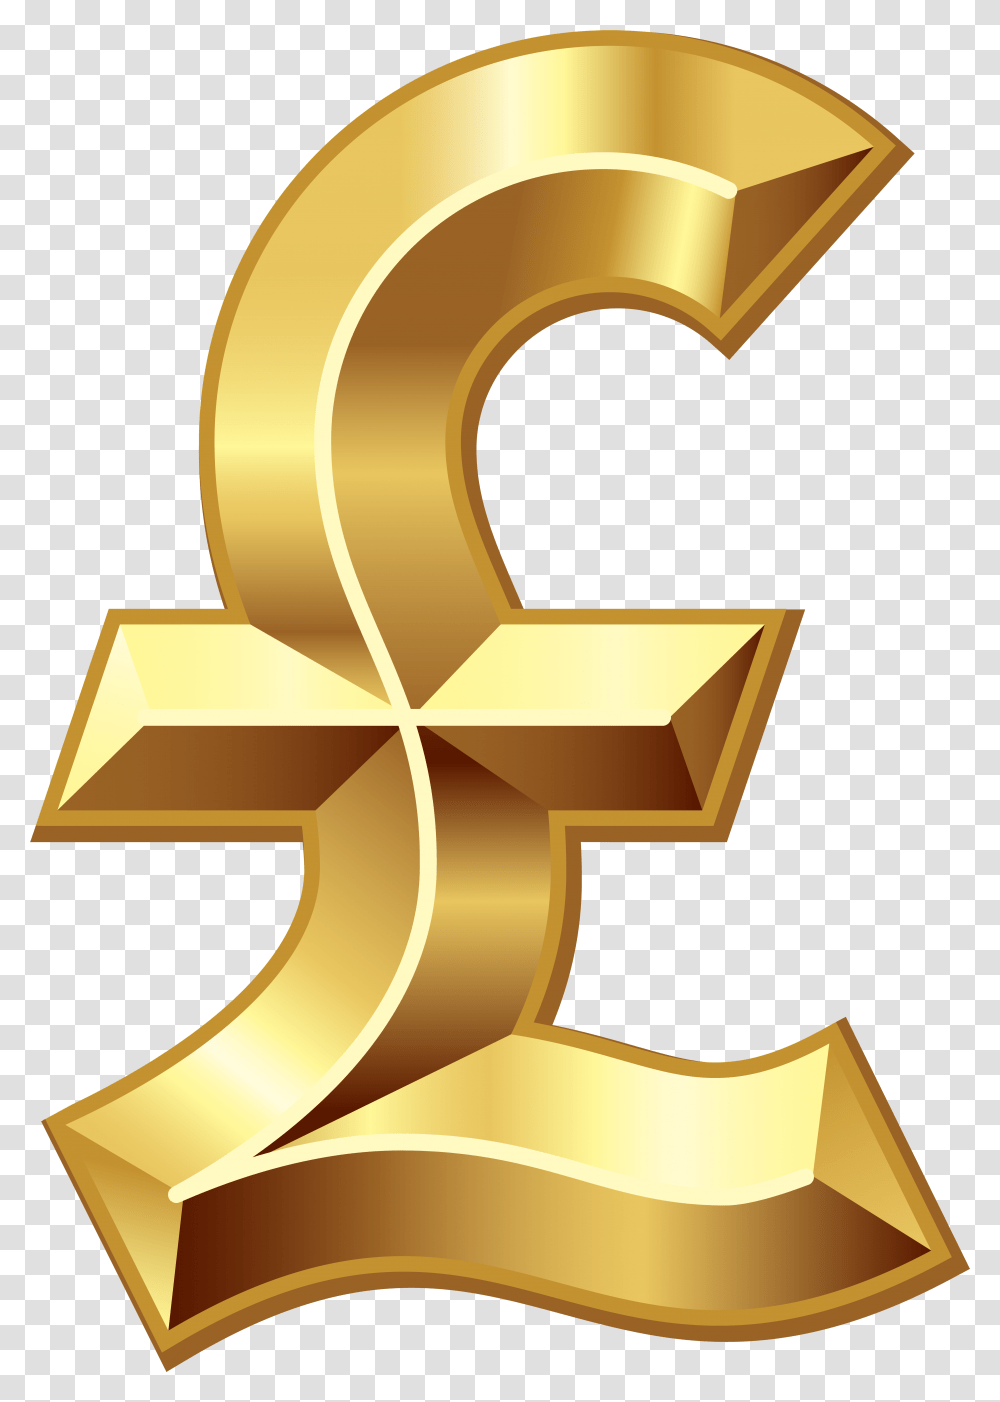 Golden Dollar Sign Gold Pound Sign, Number, Star Symbol Transparent Png